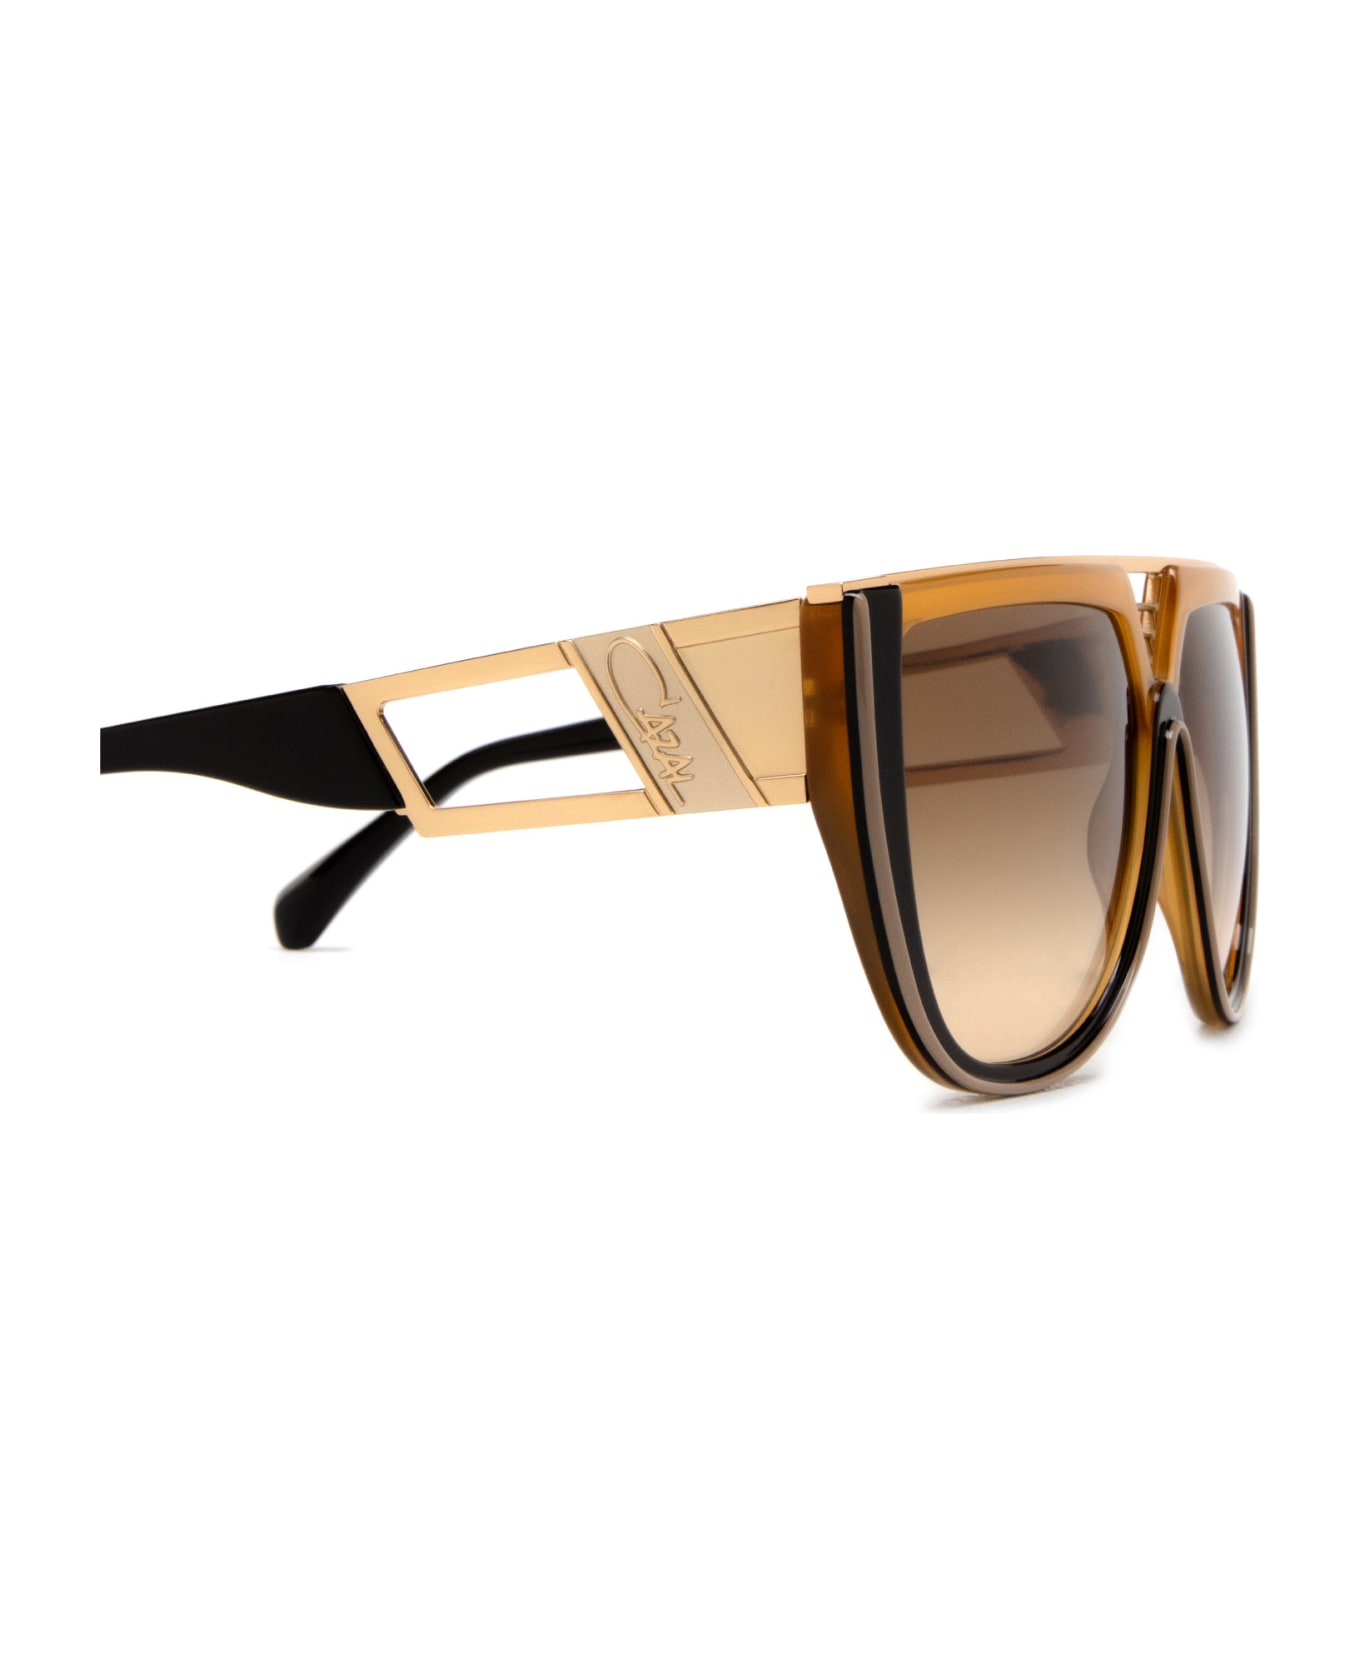 Cazal 8511 Amber - Chocolate Sunglasses - Amber - Chocolate